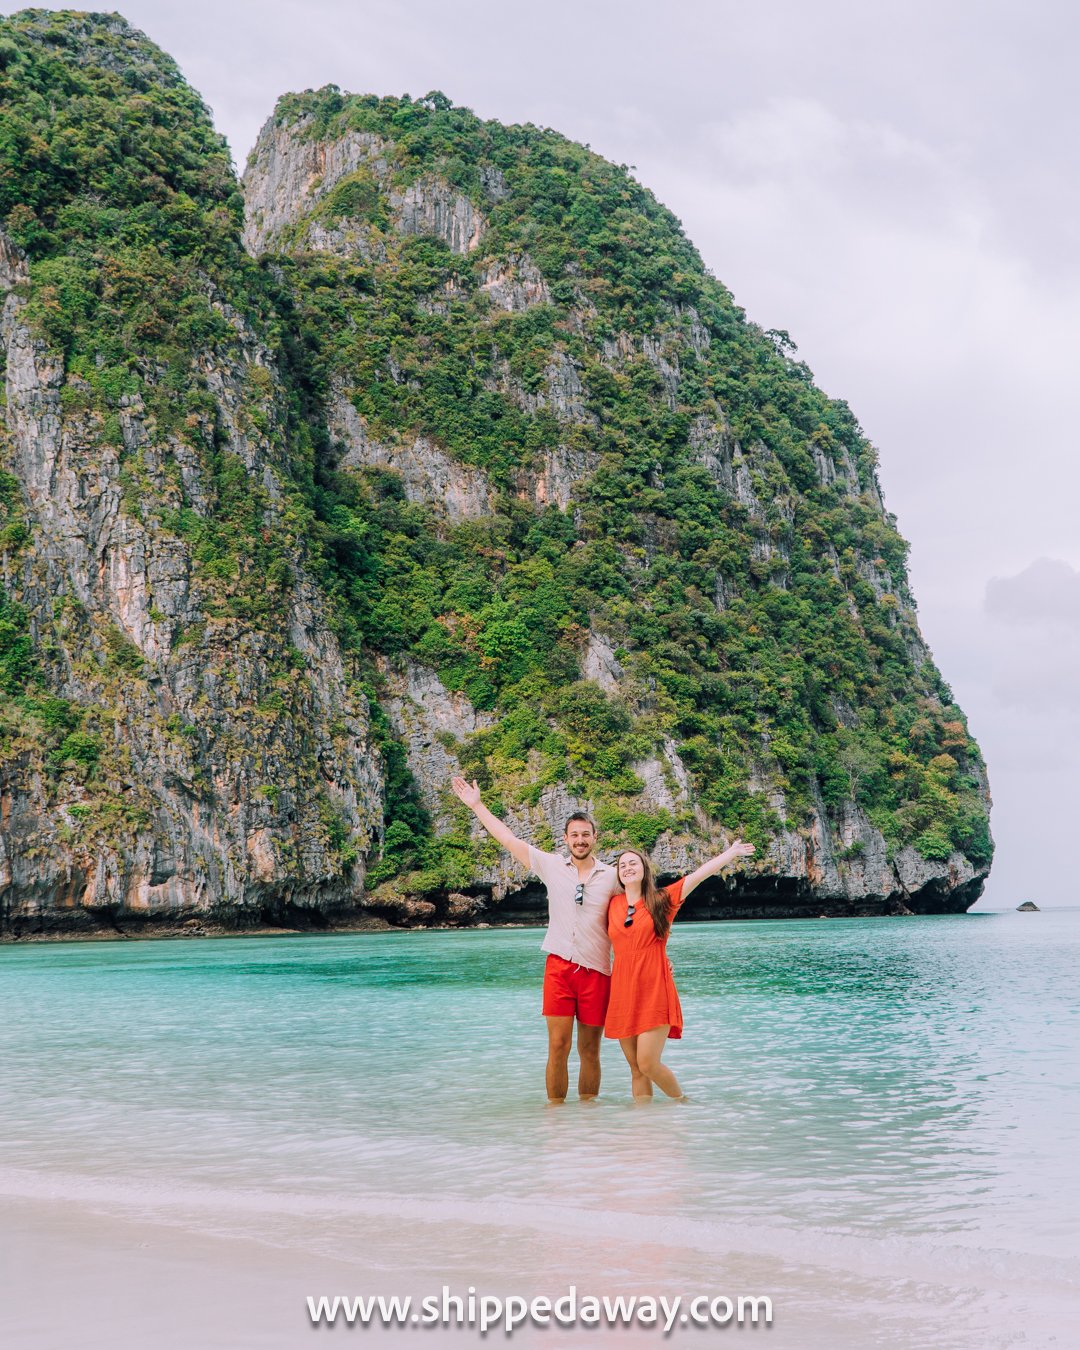 Arijana Tkalcec and Matej Span in the water at Maya Bay, Phi Phi Islands